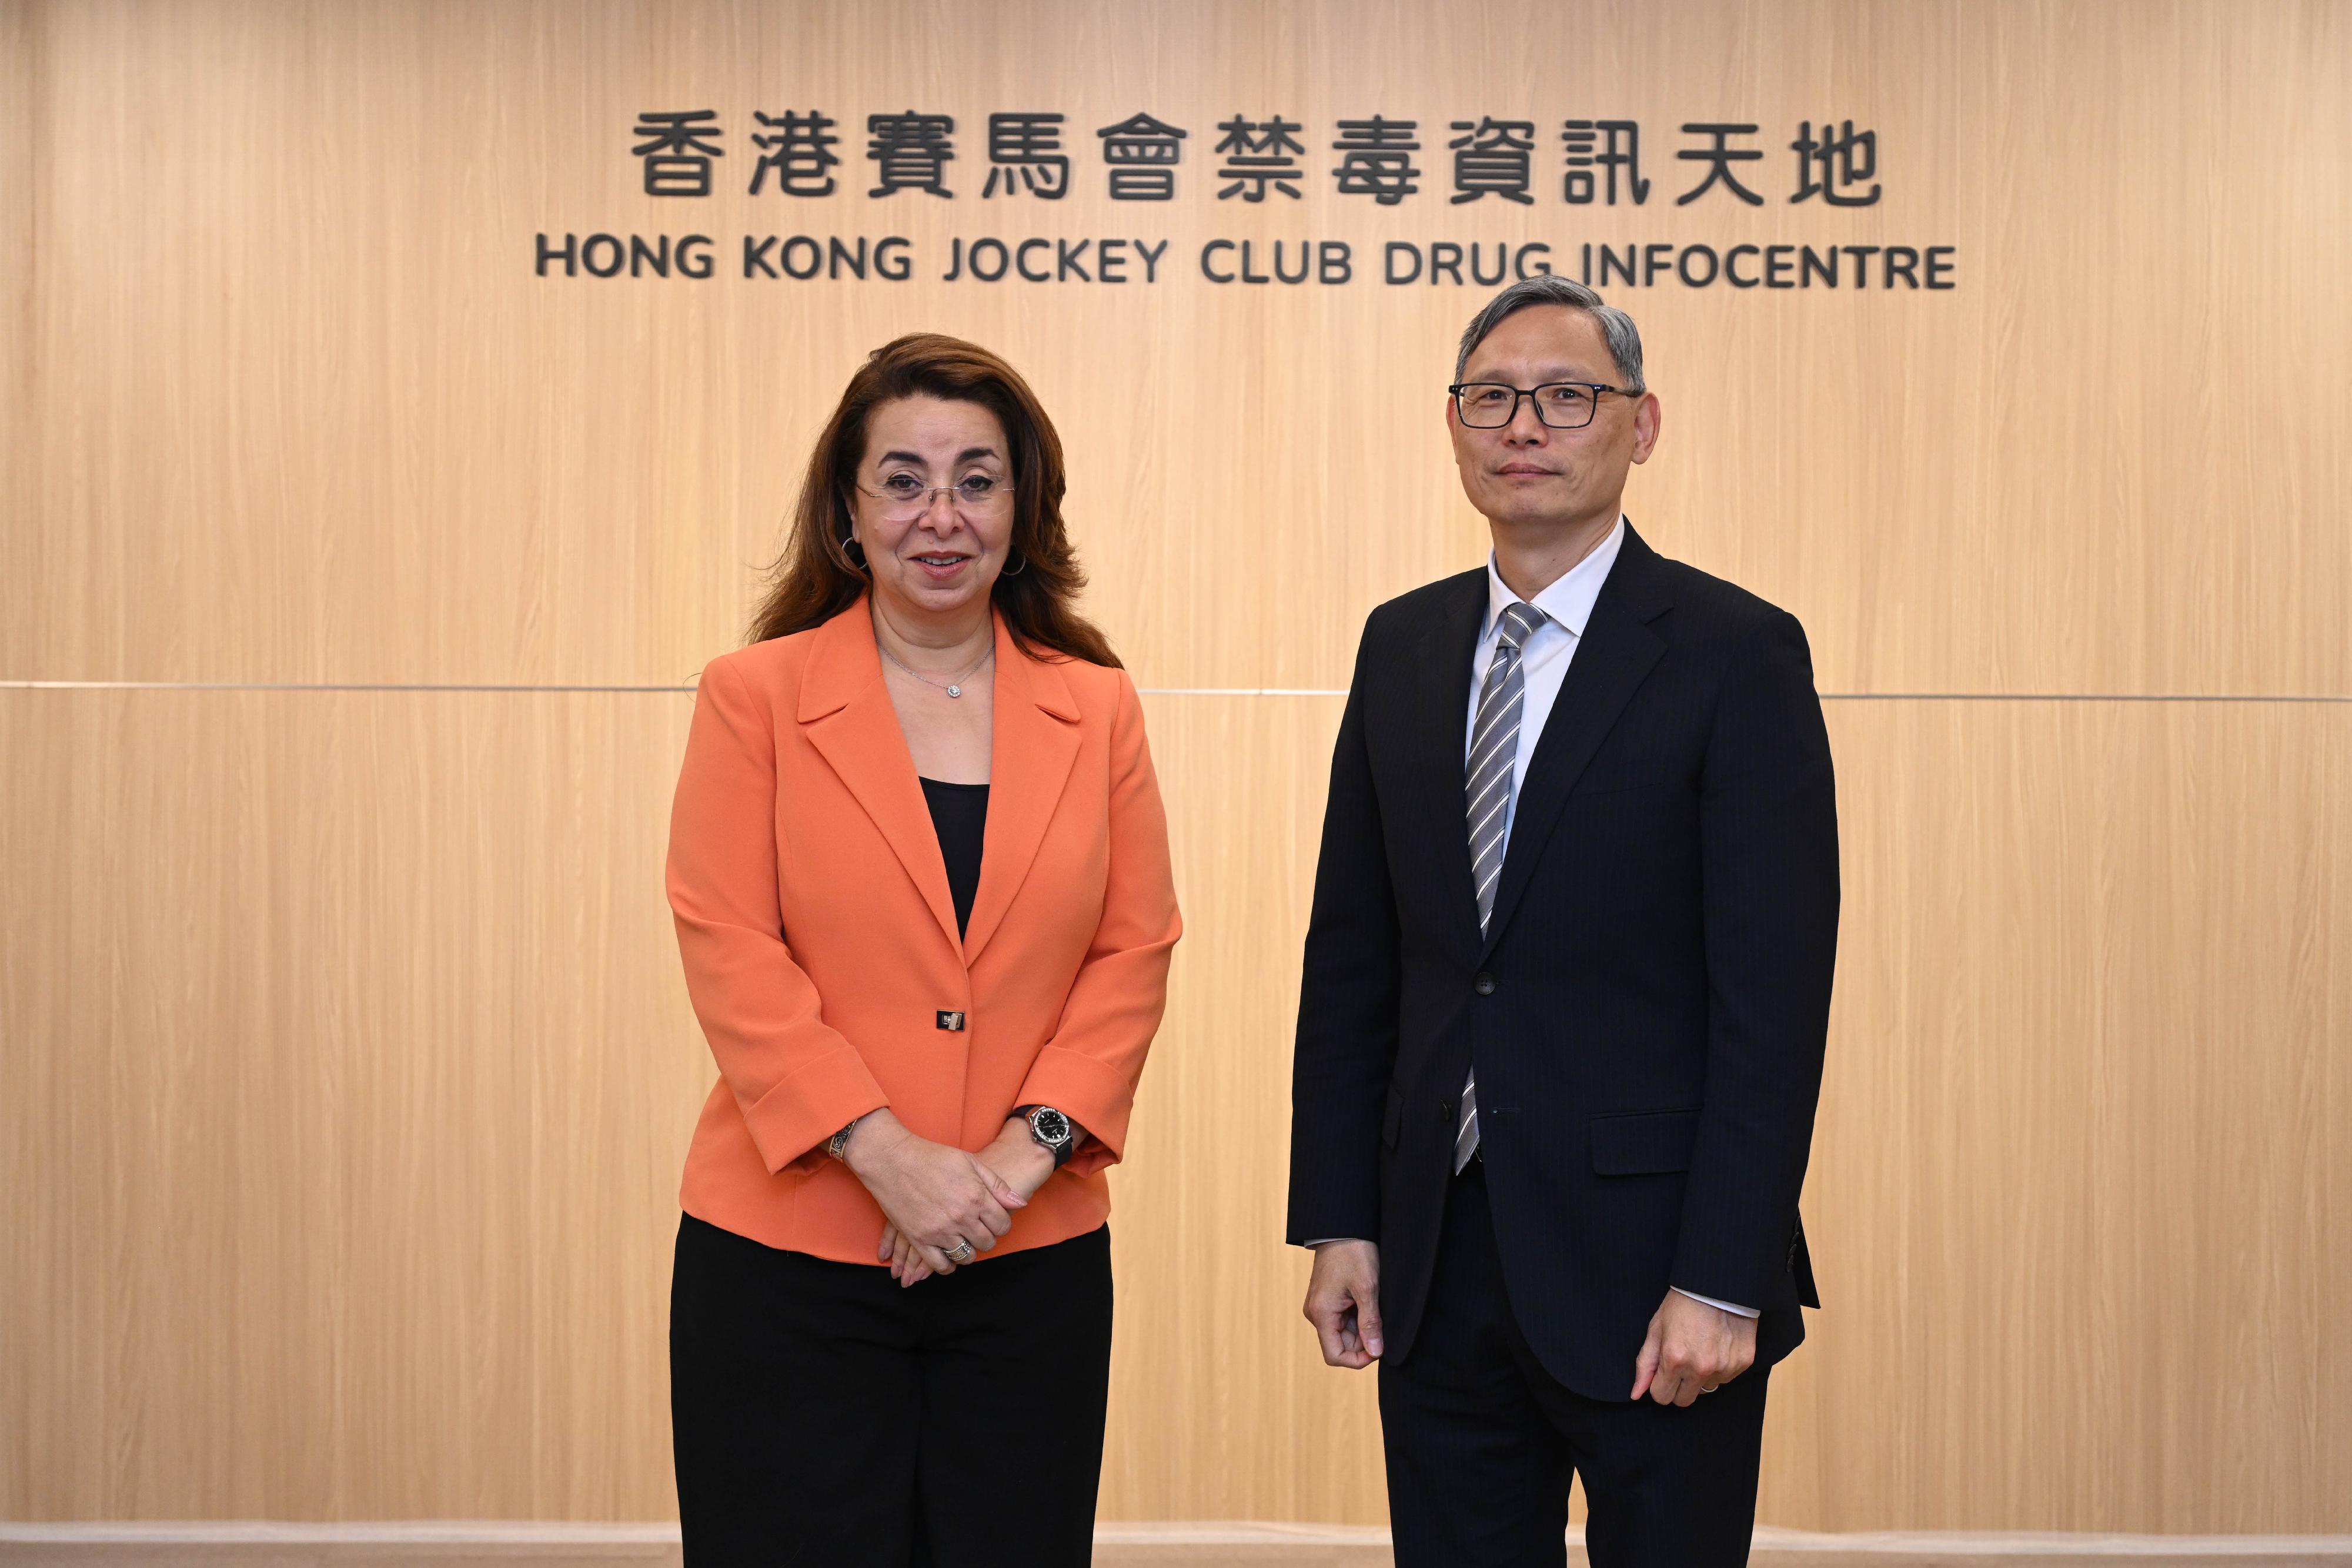 加達•法特希•瓦利執行主任（左）與卓孝業（右）於香港賽馬會禁毒資訊天地合照。